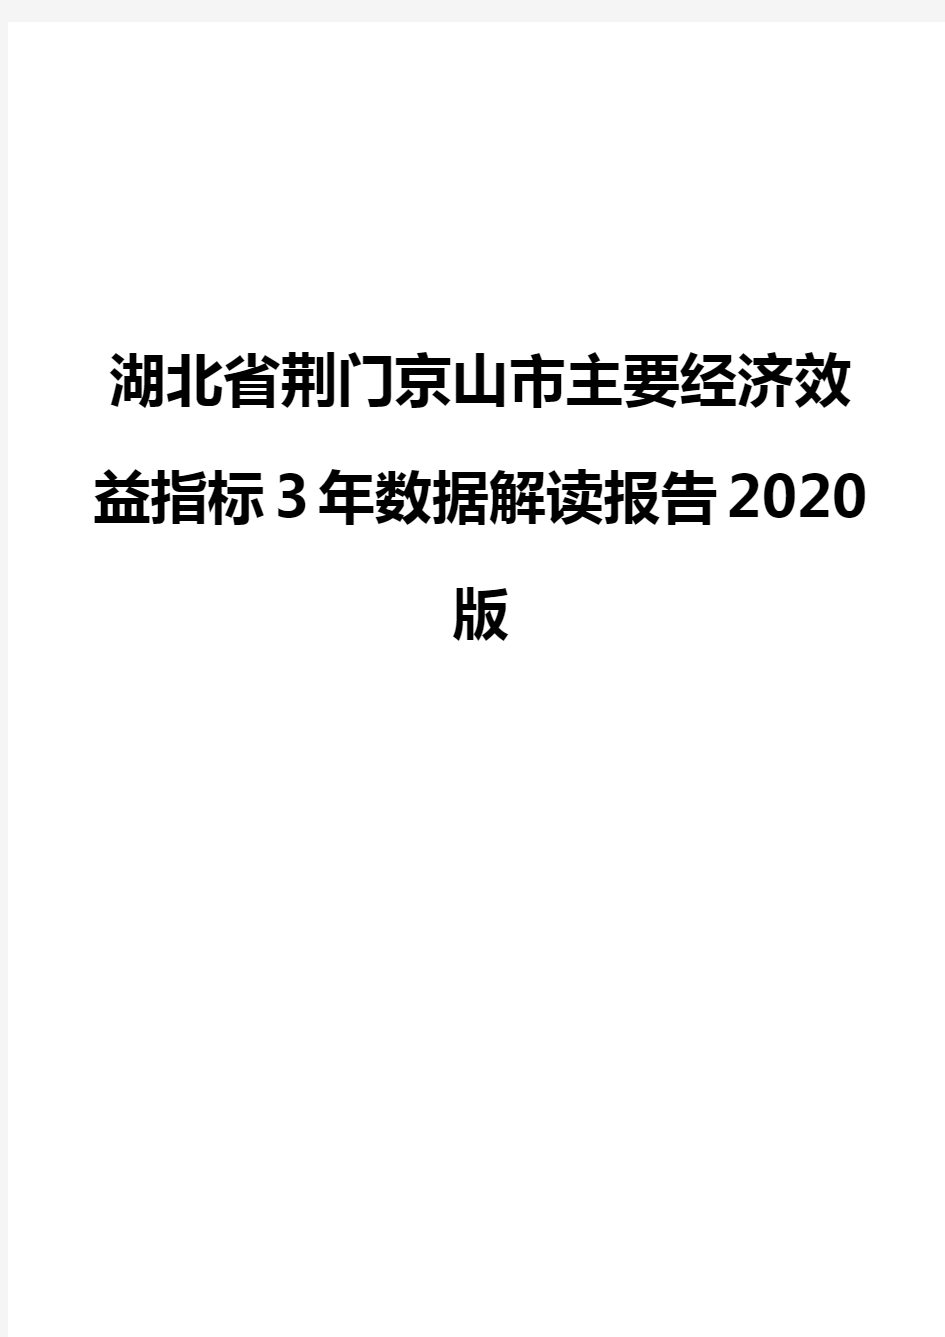 湖北省荆门京山市主要经济效益指标3年数据解读报告2020版